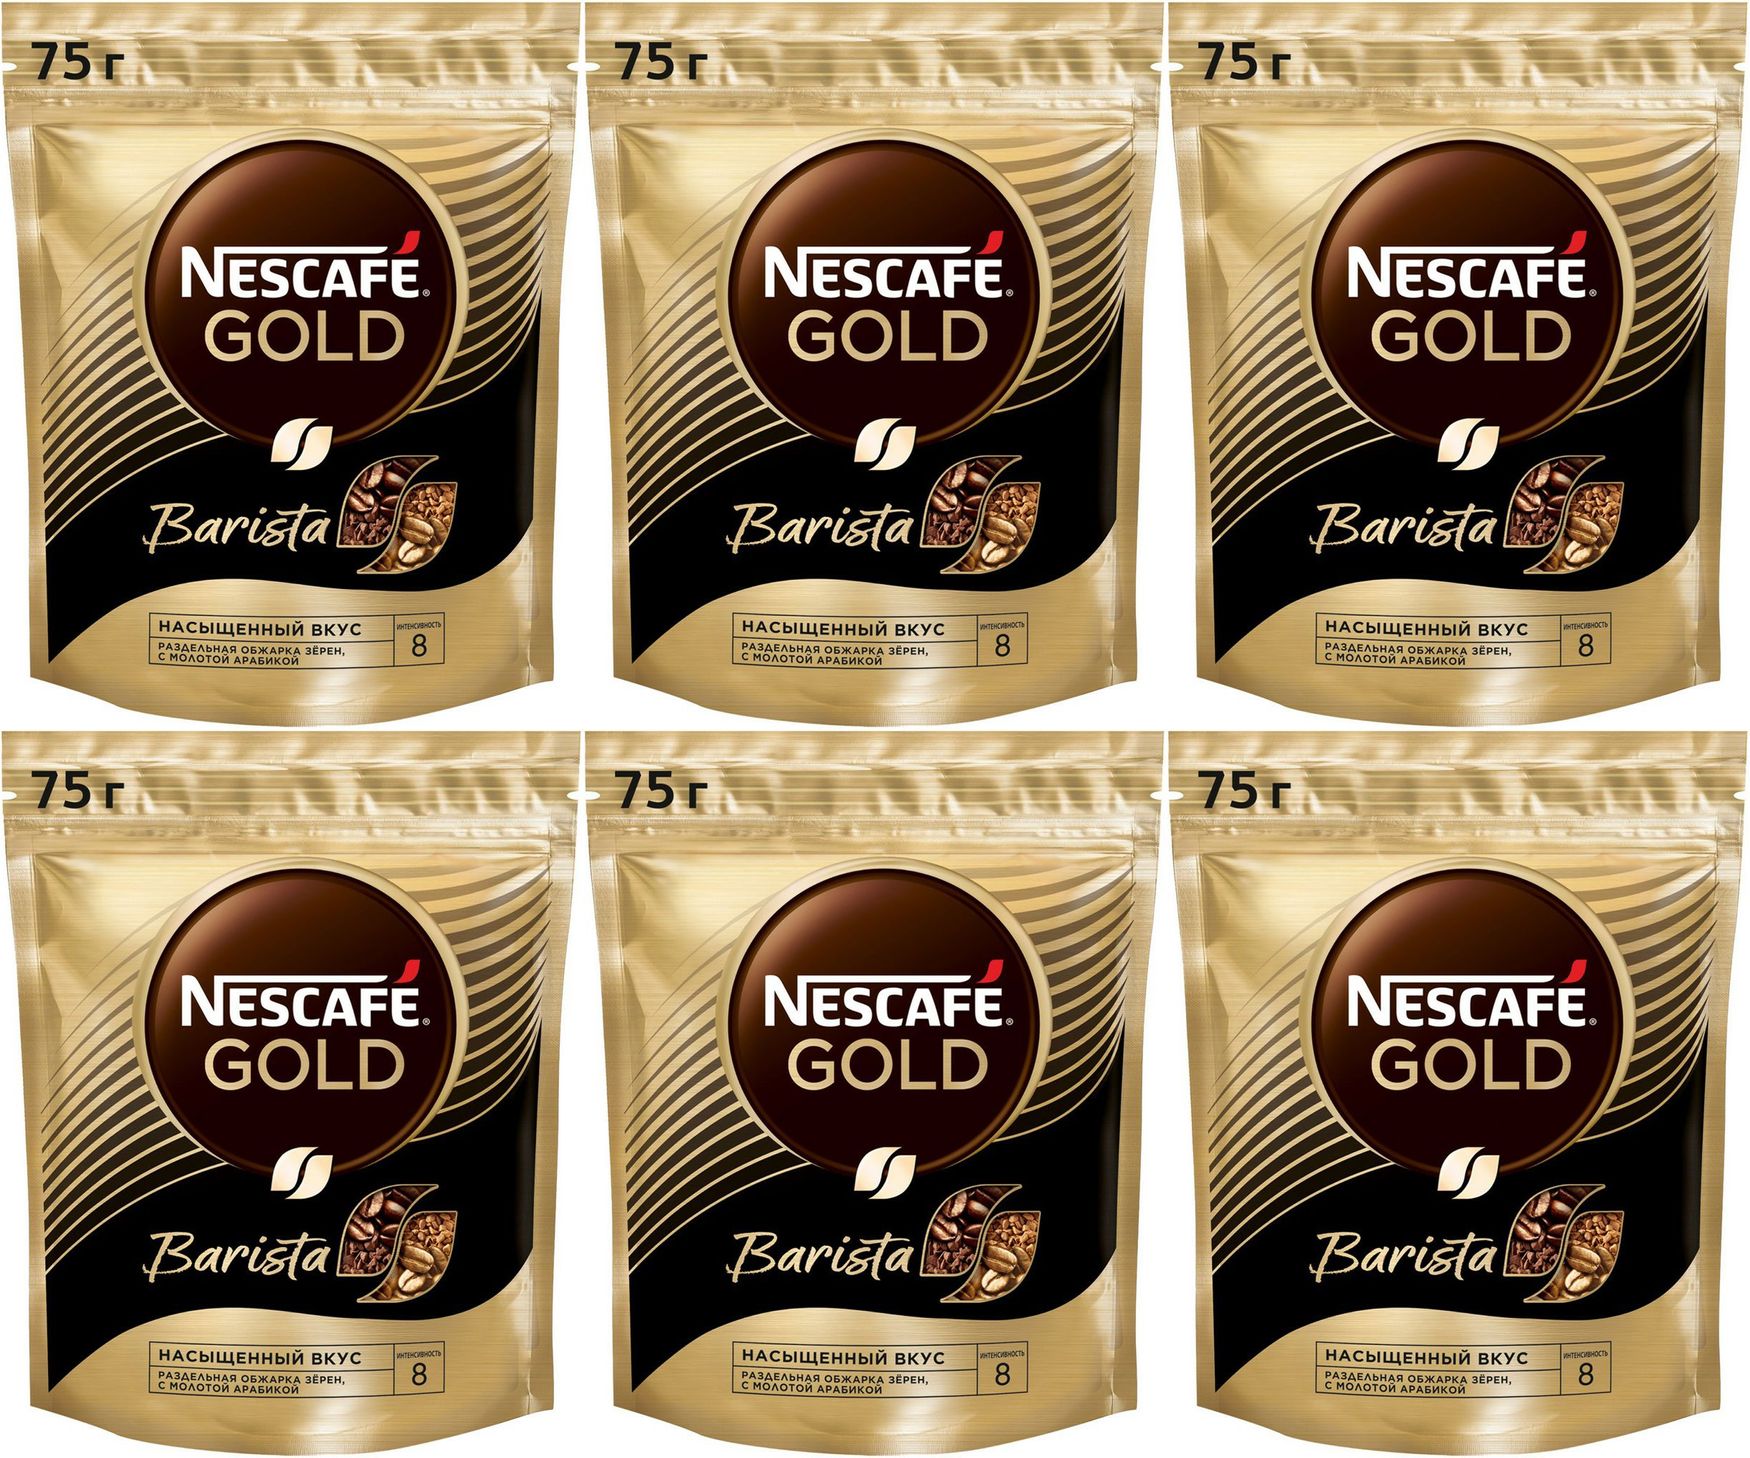 Бариста растворимый. Кофе Nescafe Gold растворимый, 75г. Кофе Нескафе Голд 75гр бариста/стайл пакет. Нескафе Голд растворимый в пакетиках. Кофе Nescafe Gold Barista с кружкой.